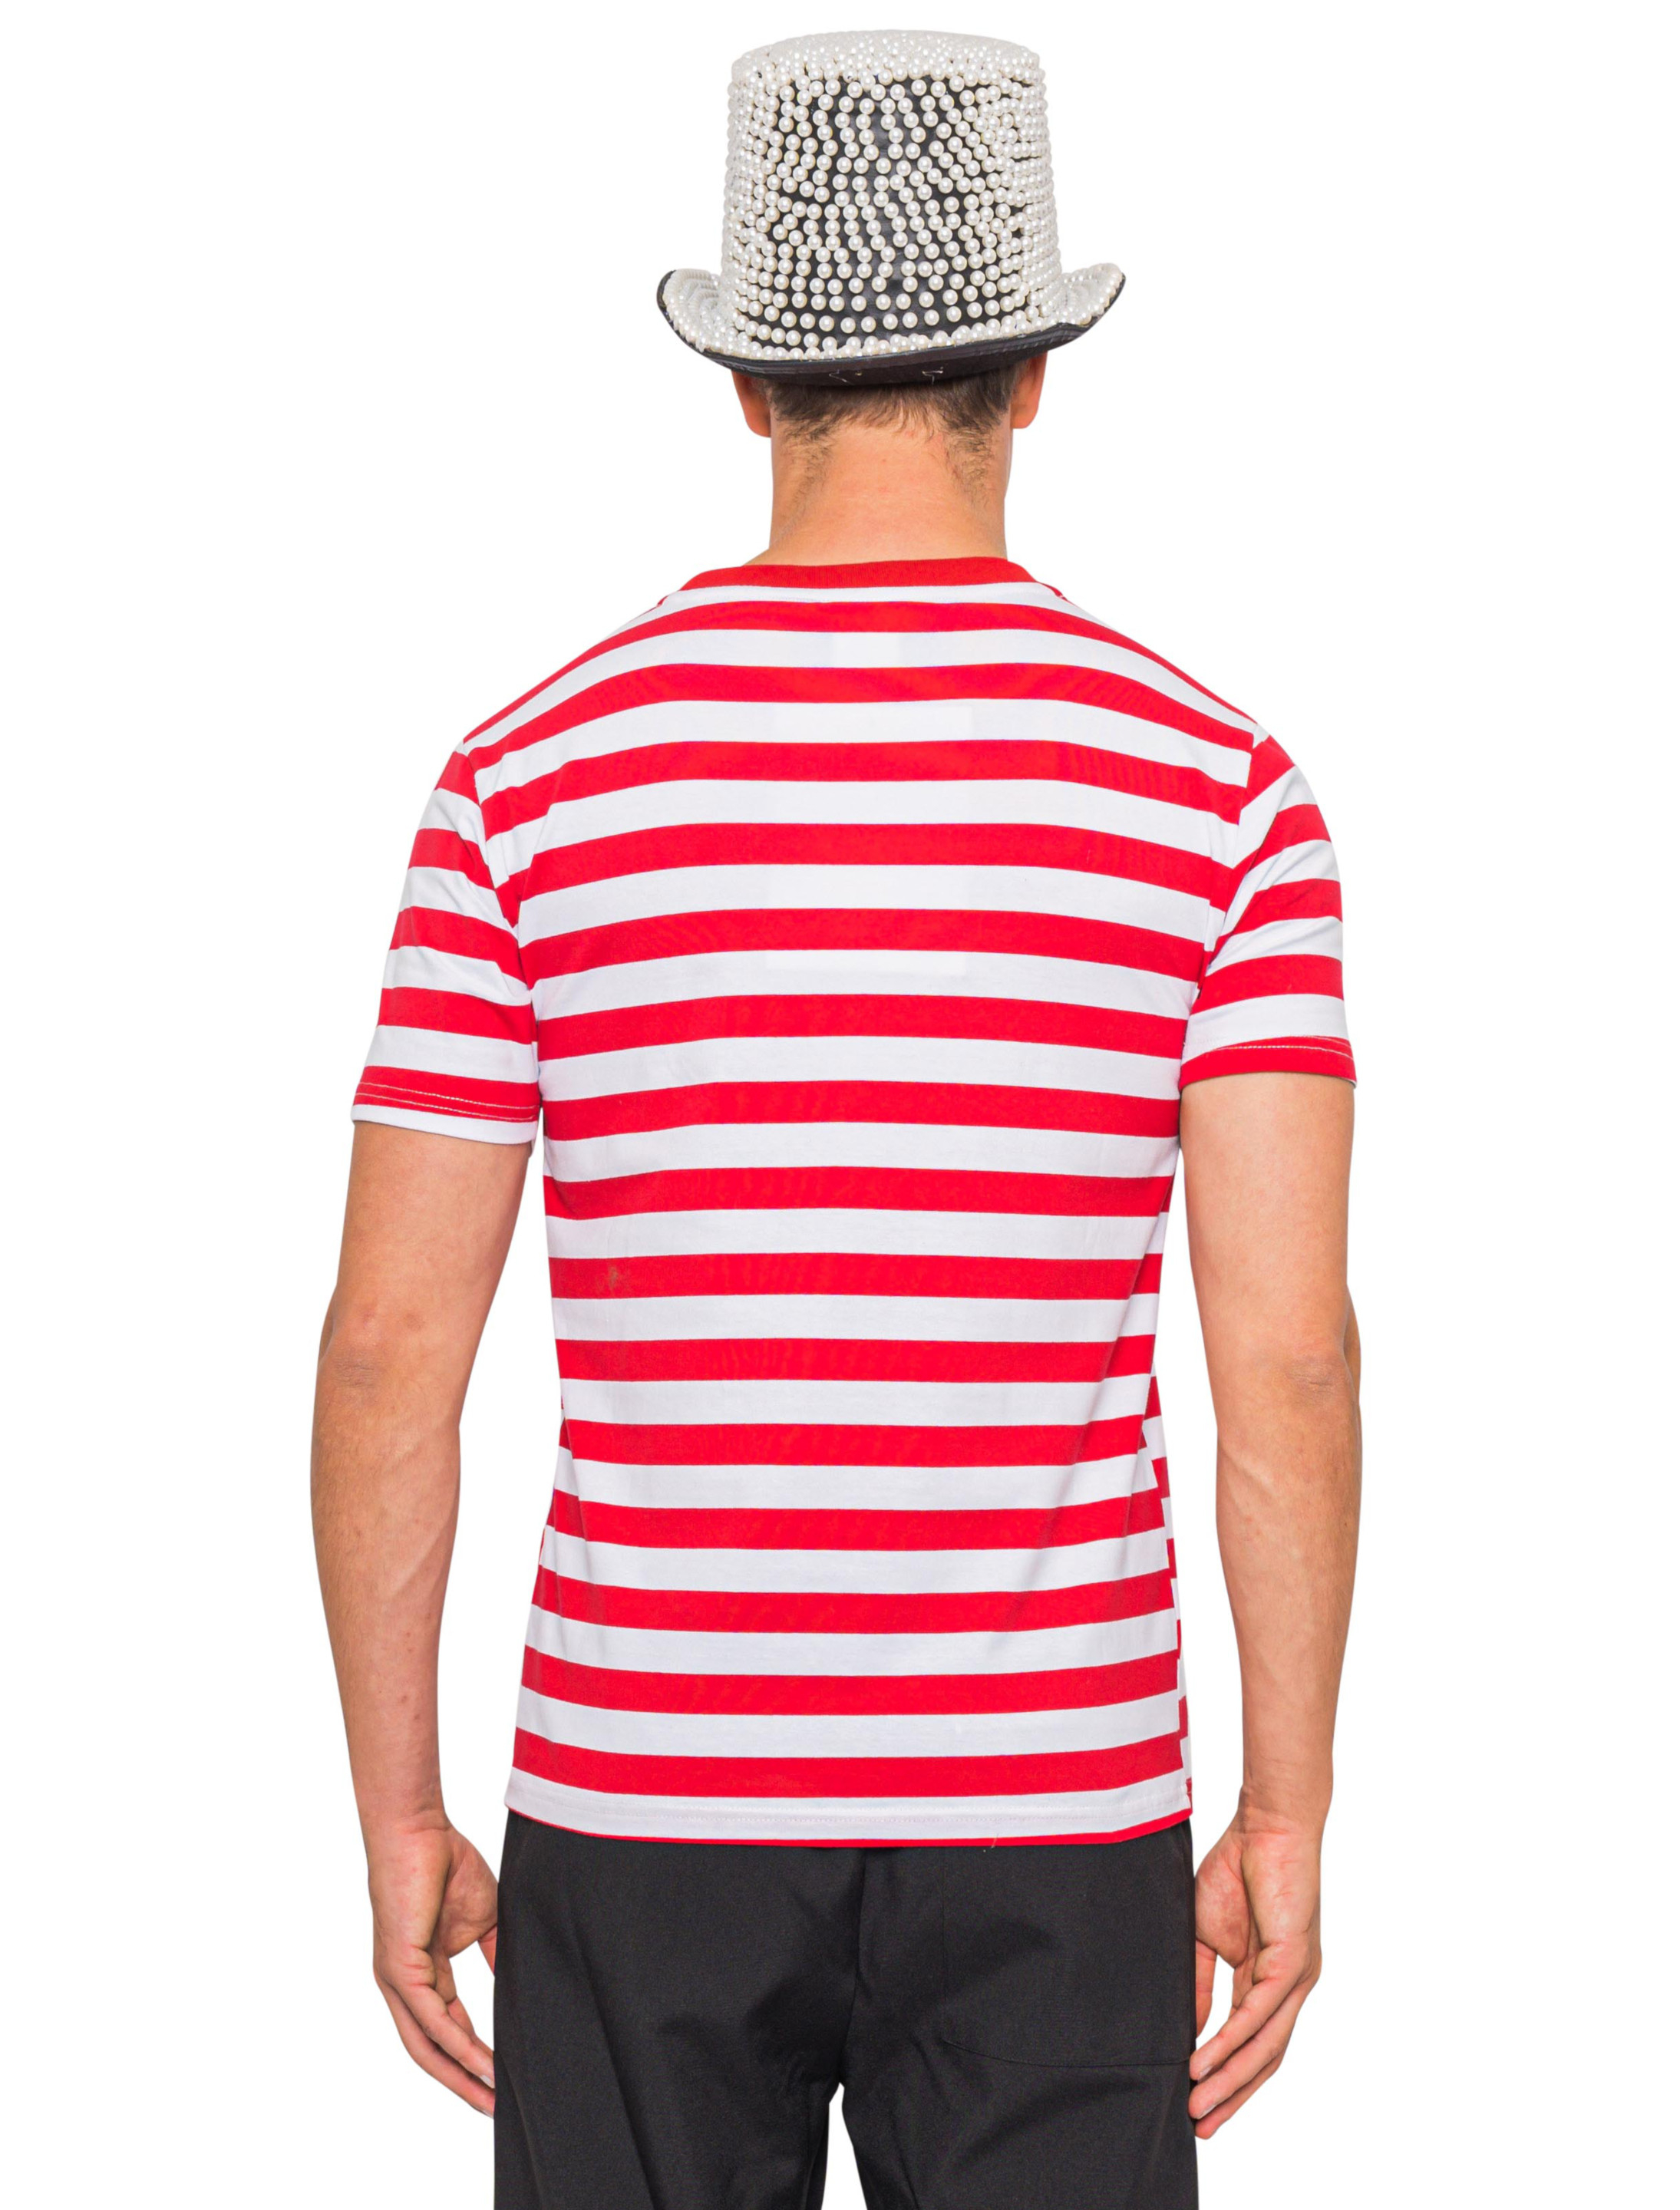 T-Shirt mit Dom Herren rot/weiß 4XL